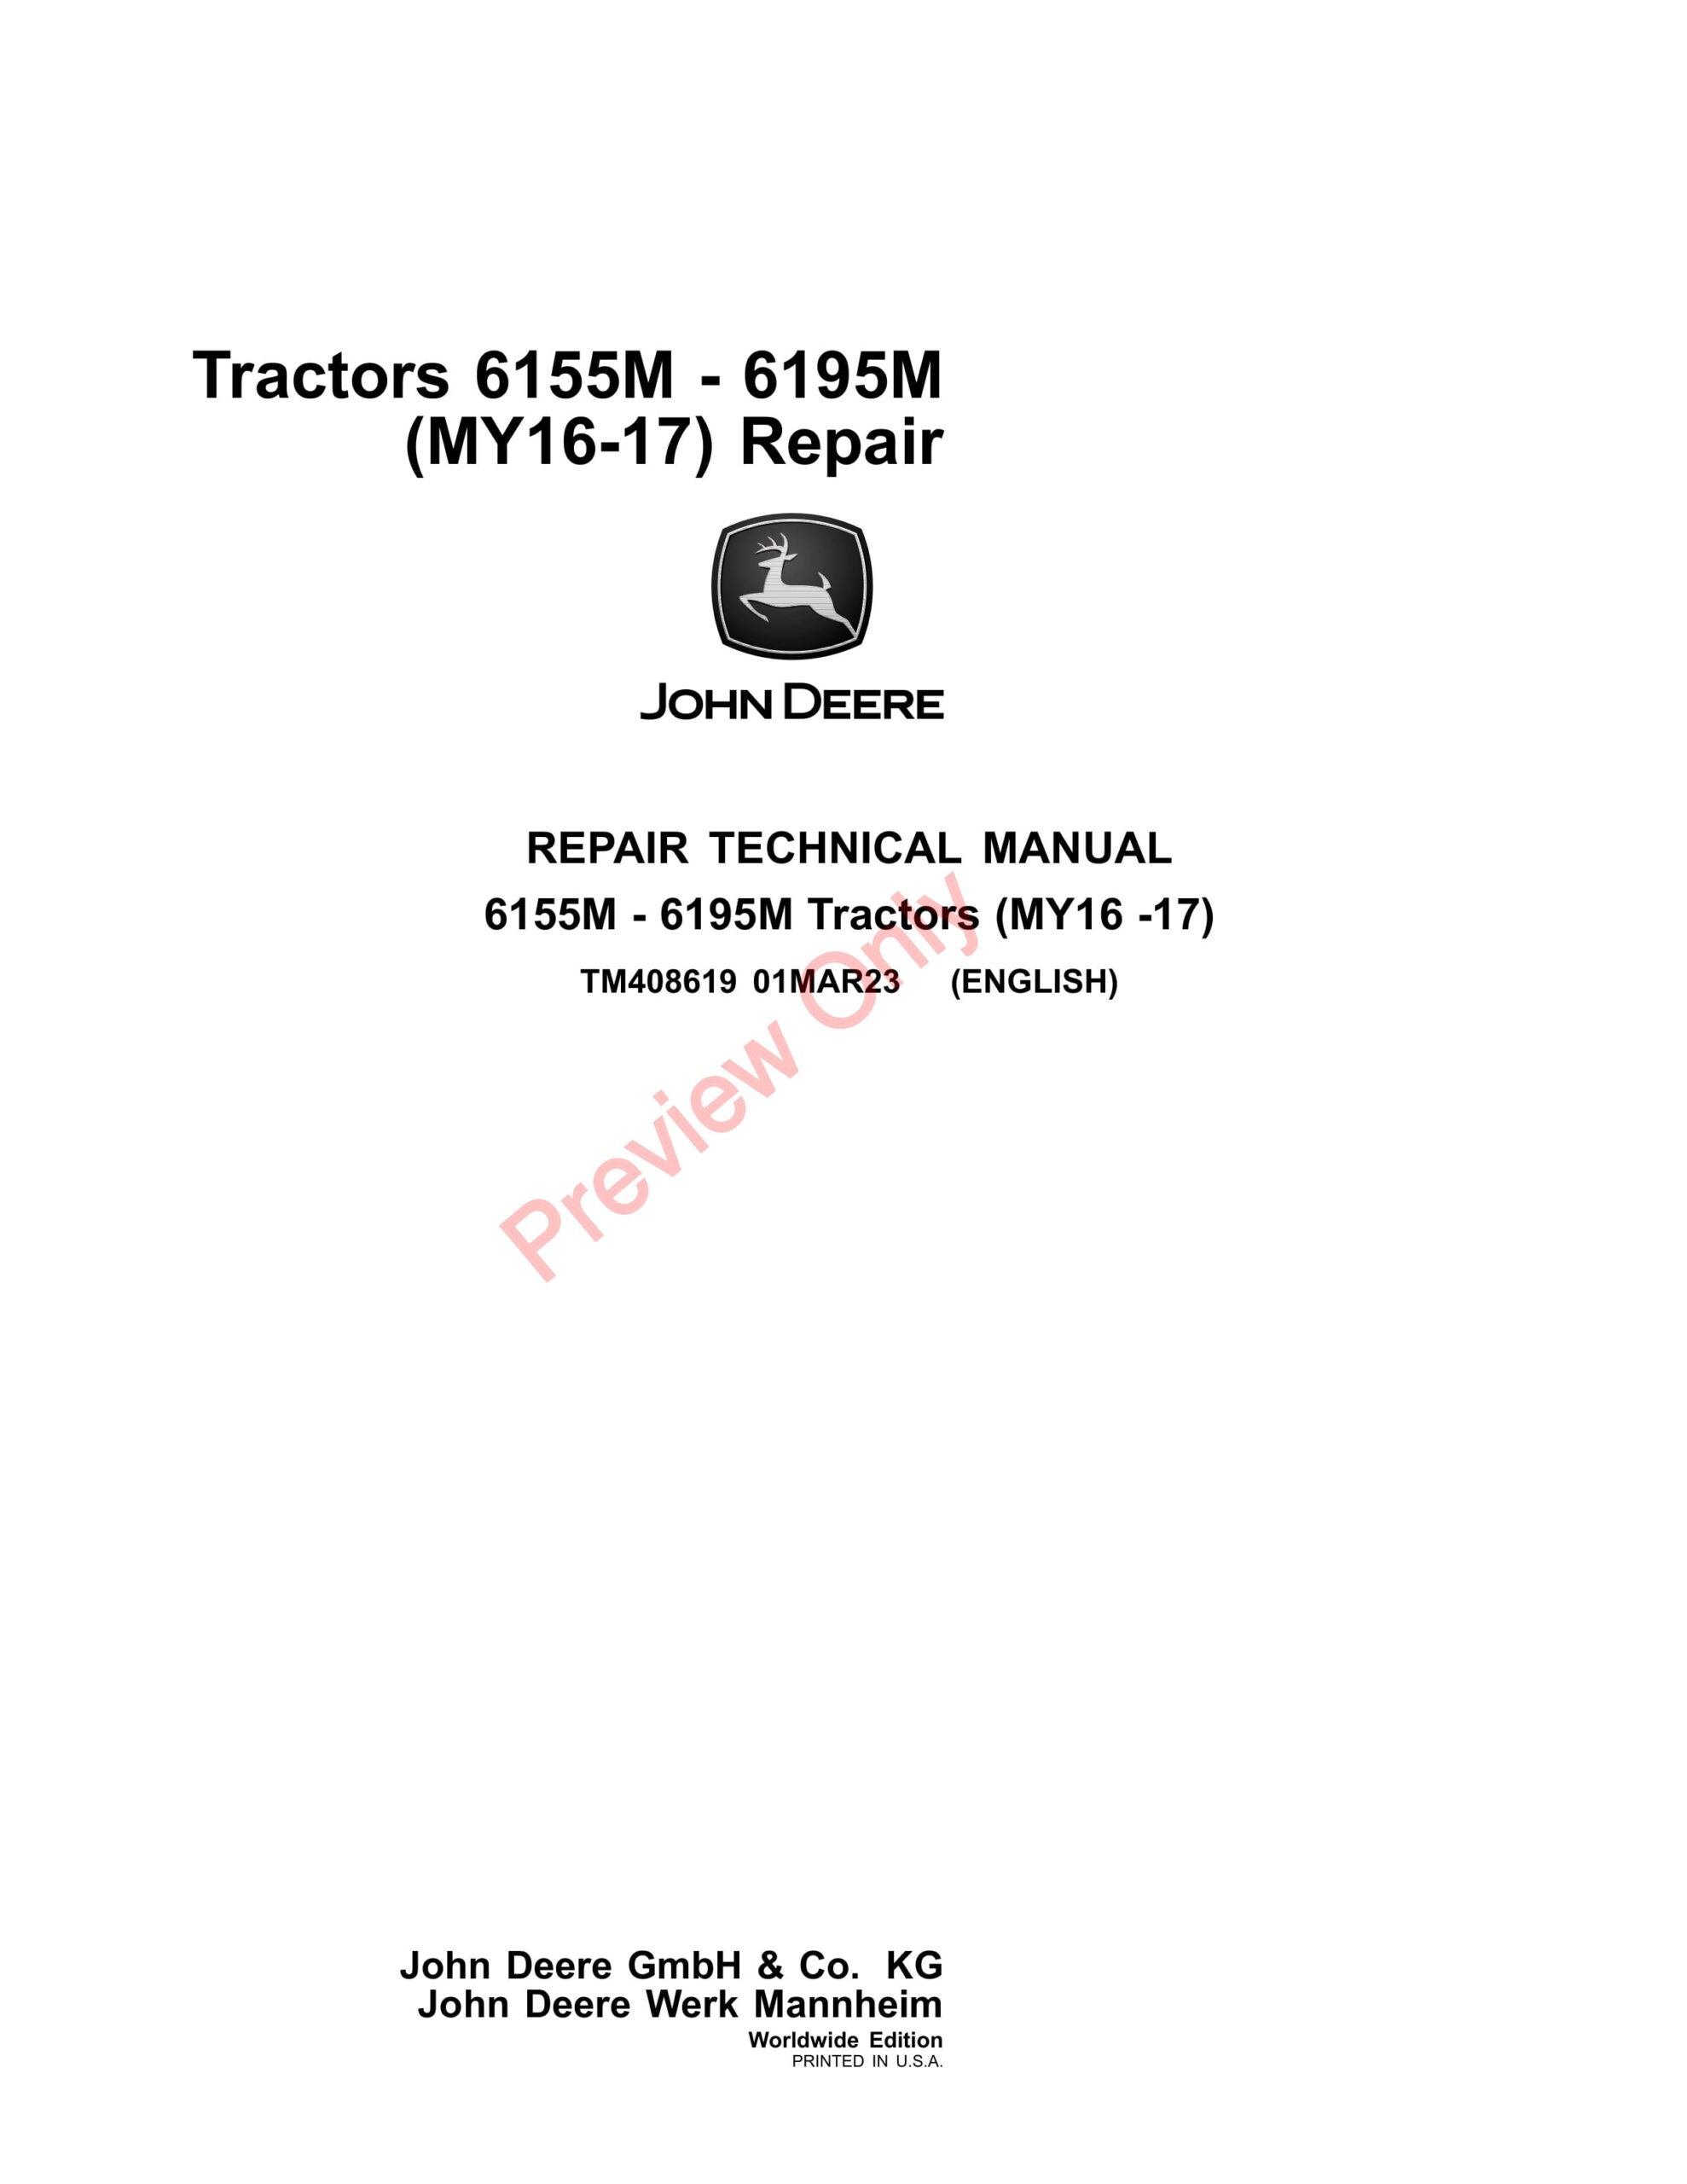 John Deere Tractors 6155M, 6175M, 6195M, (MY2016-2017) Repair Technical Manual TM408619 01MAR23-1